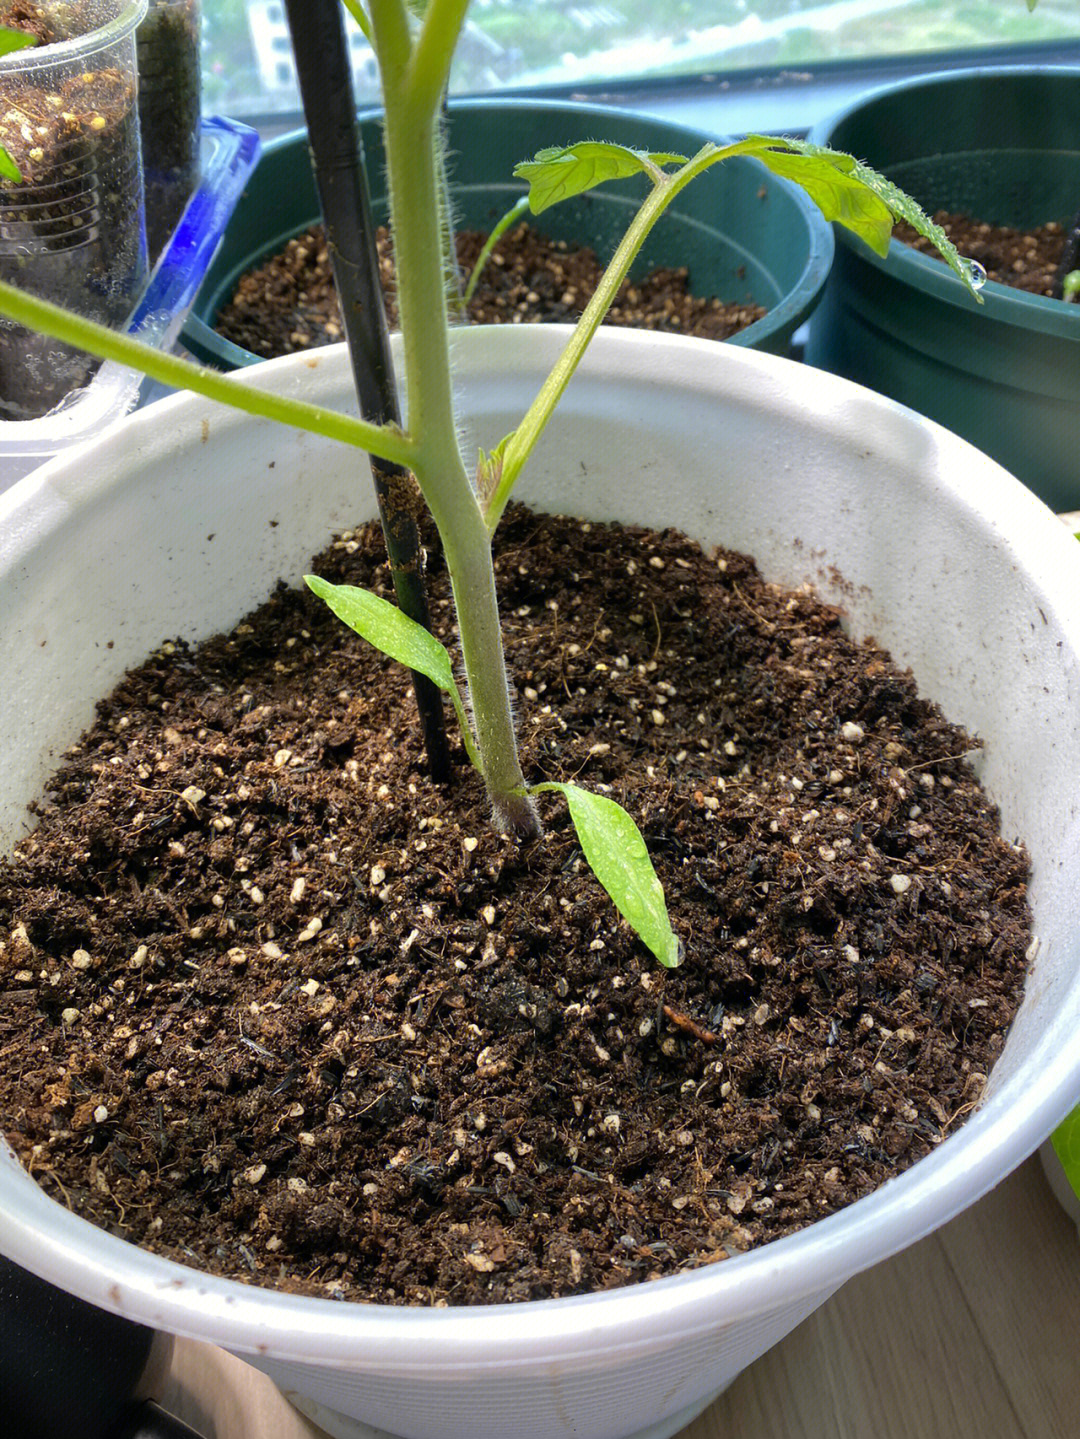 这个番茄苗的长得茎挺粗的,最近降温了,只有13度左右,叶子有点卷边